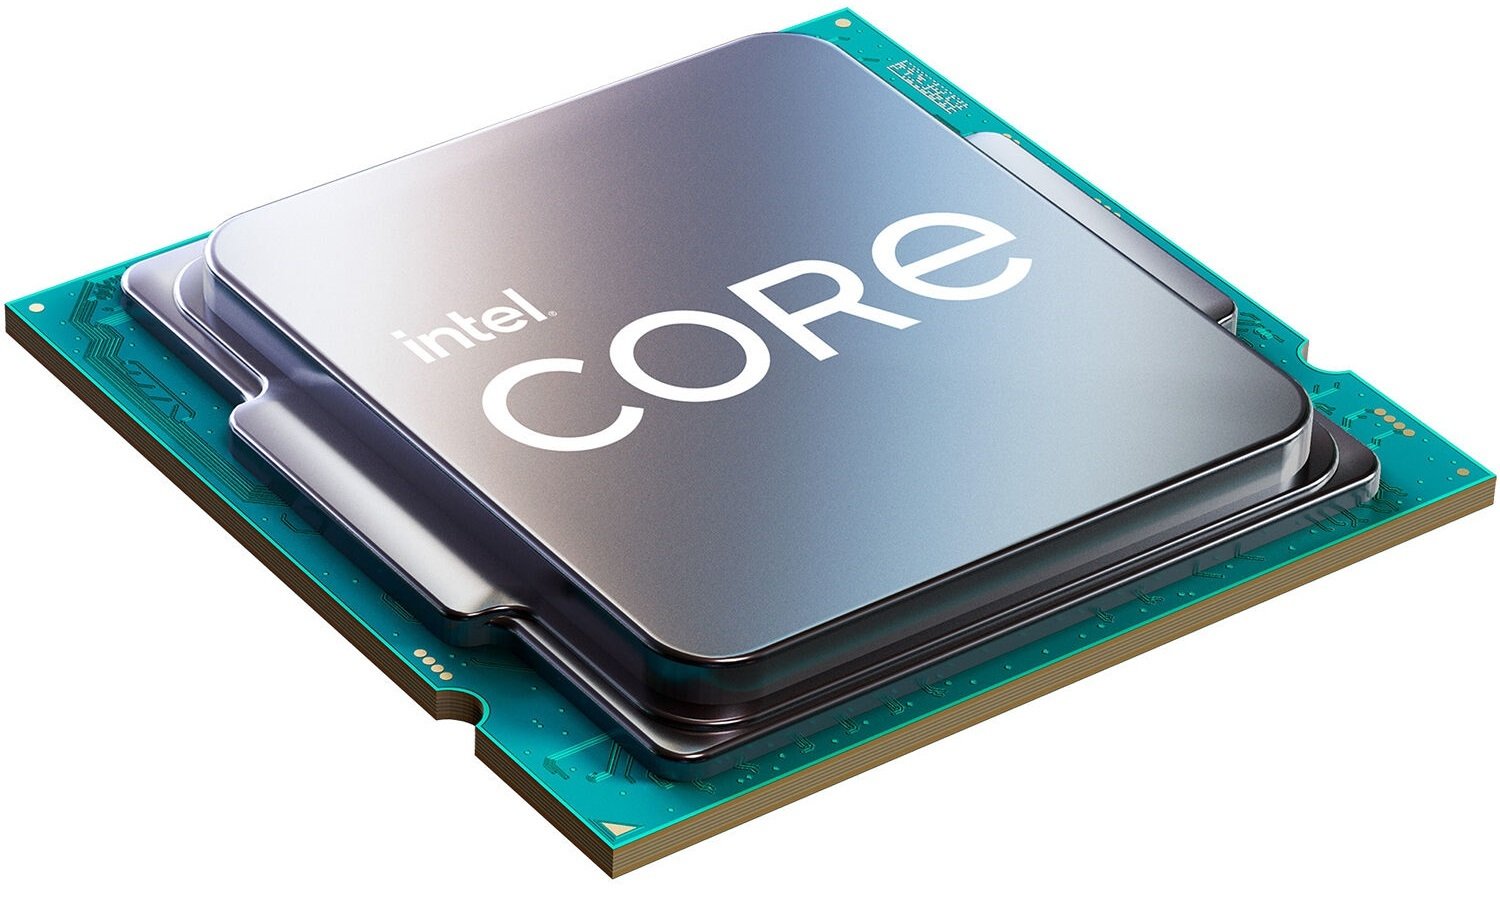 Процессор Intel Core i5-11400 6/12 2.6GHz 12M LGA1200 65W box (BX8070811400) фото 